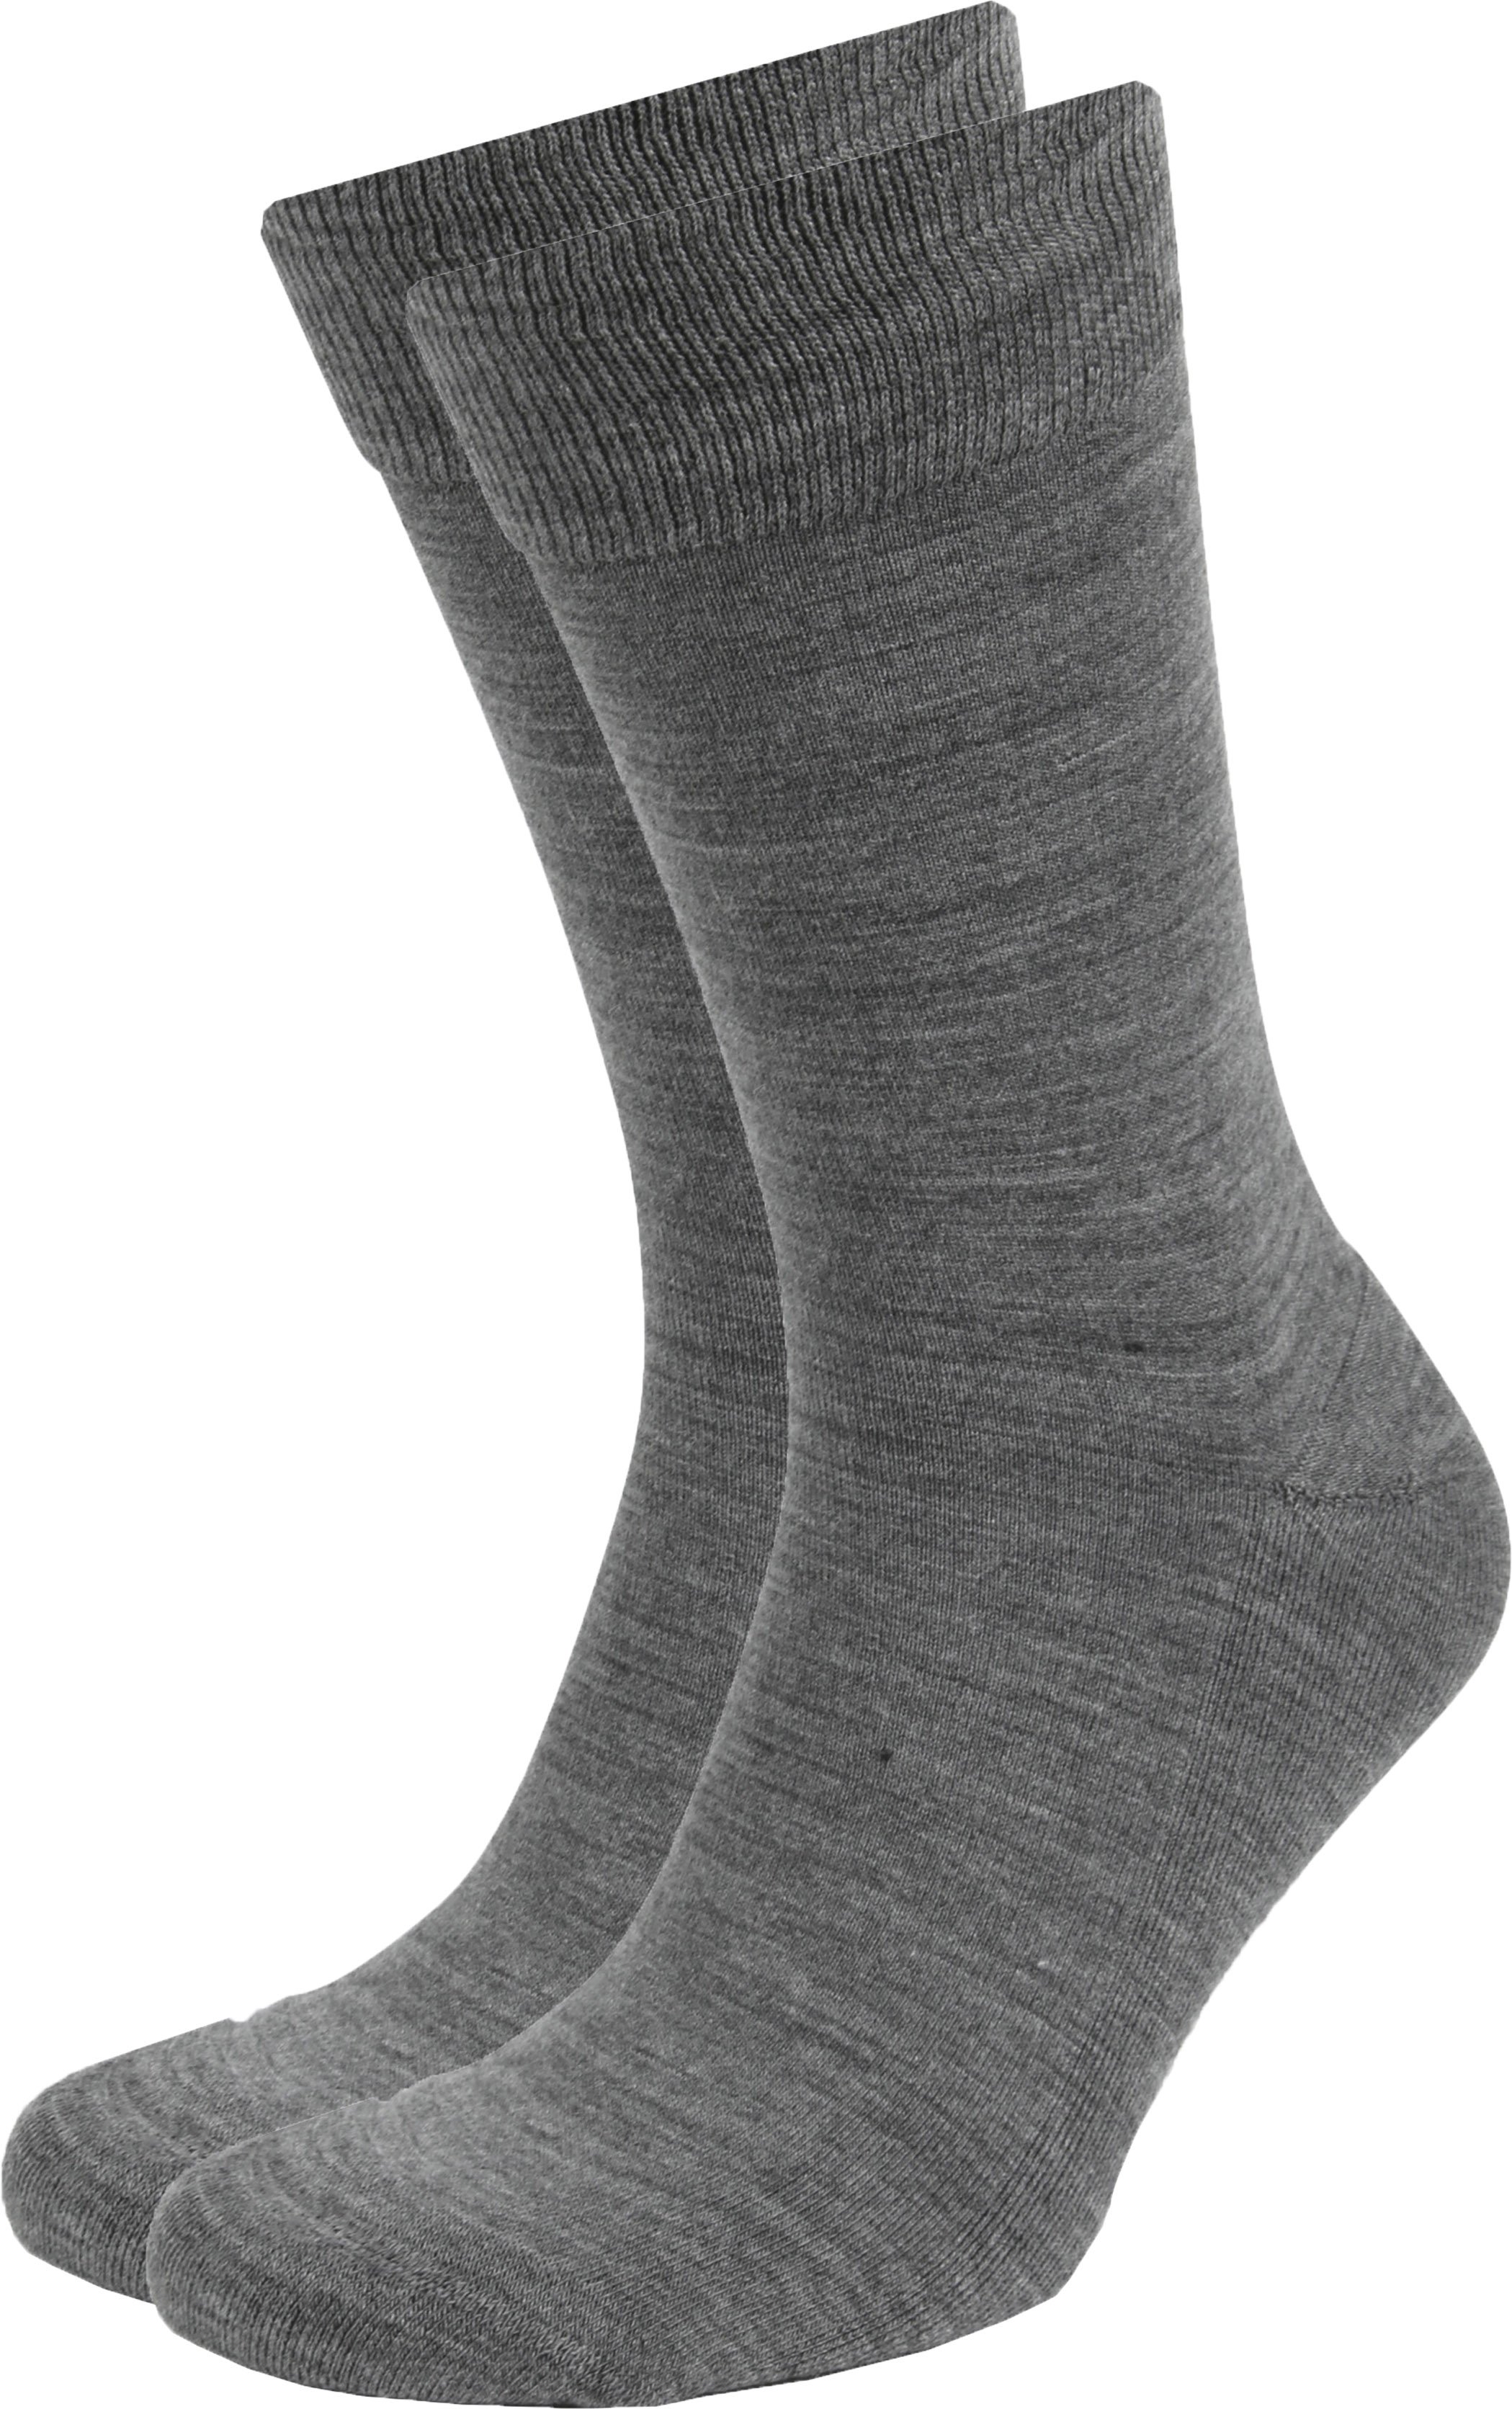 Merino Socks Gray 2-Pack